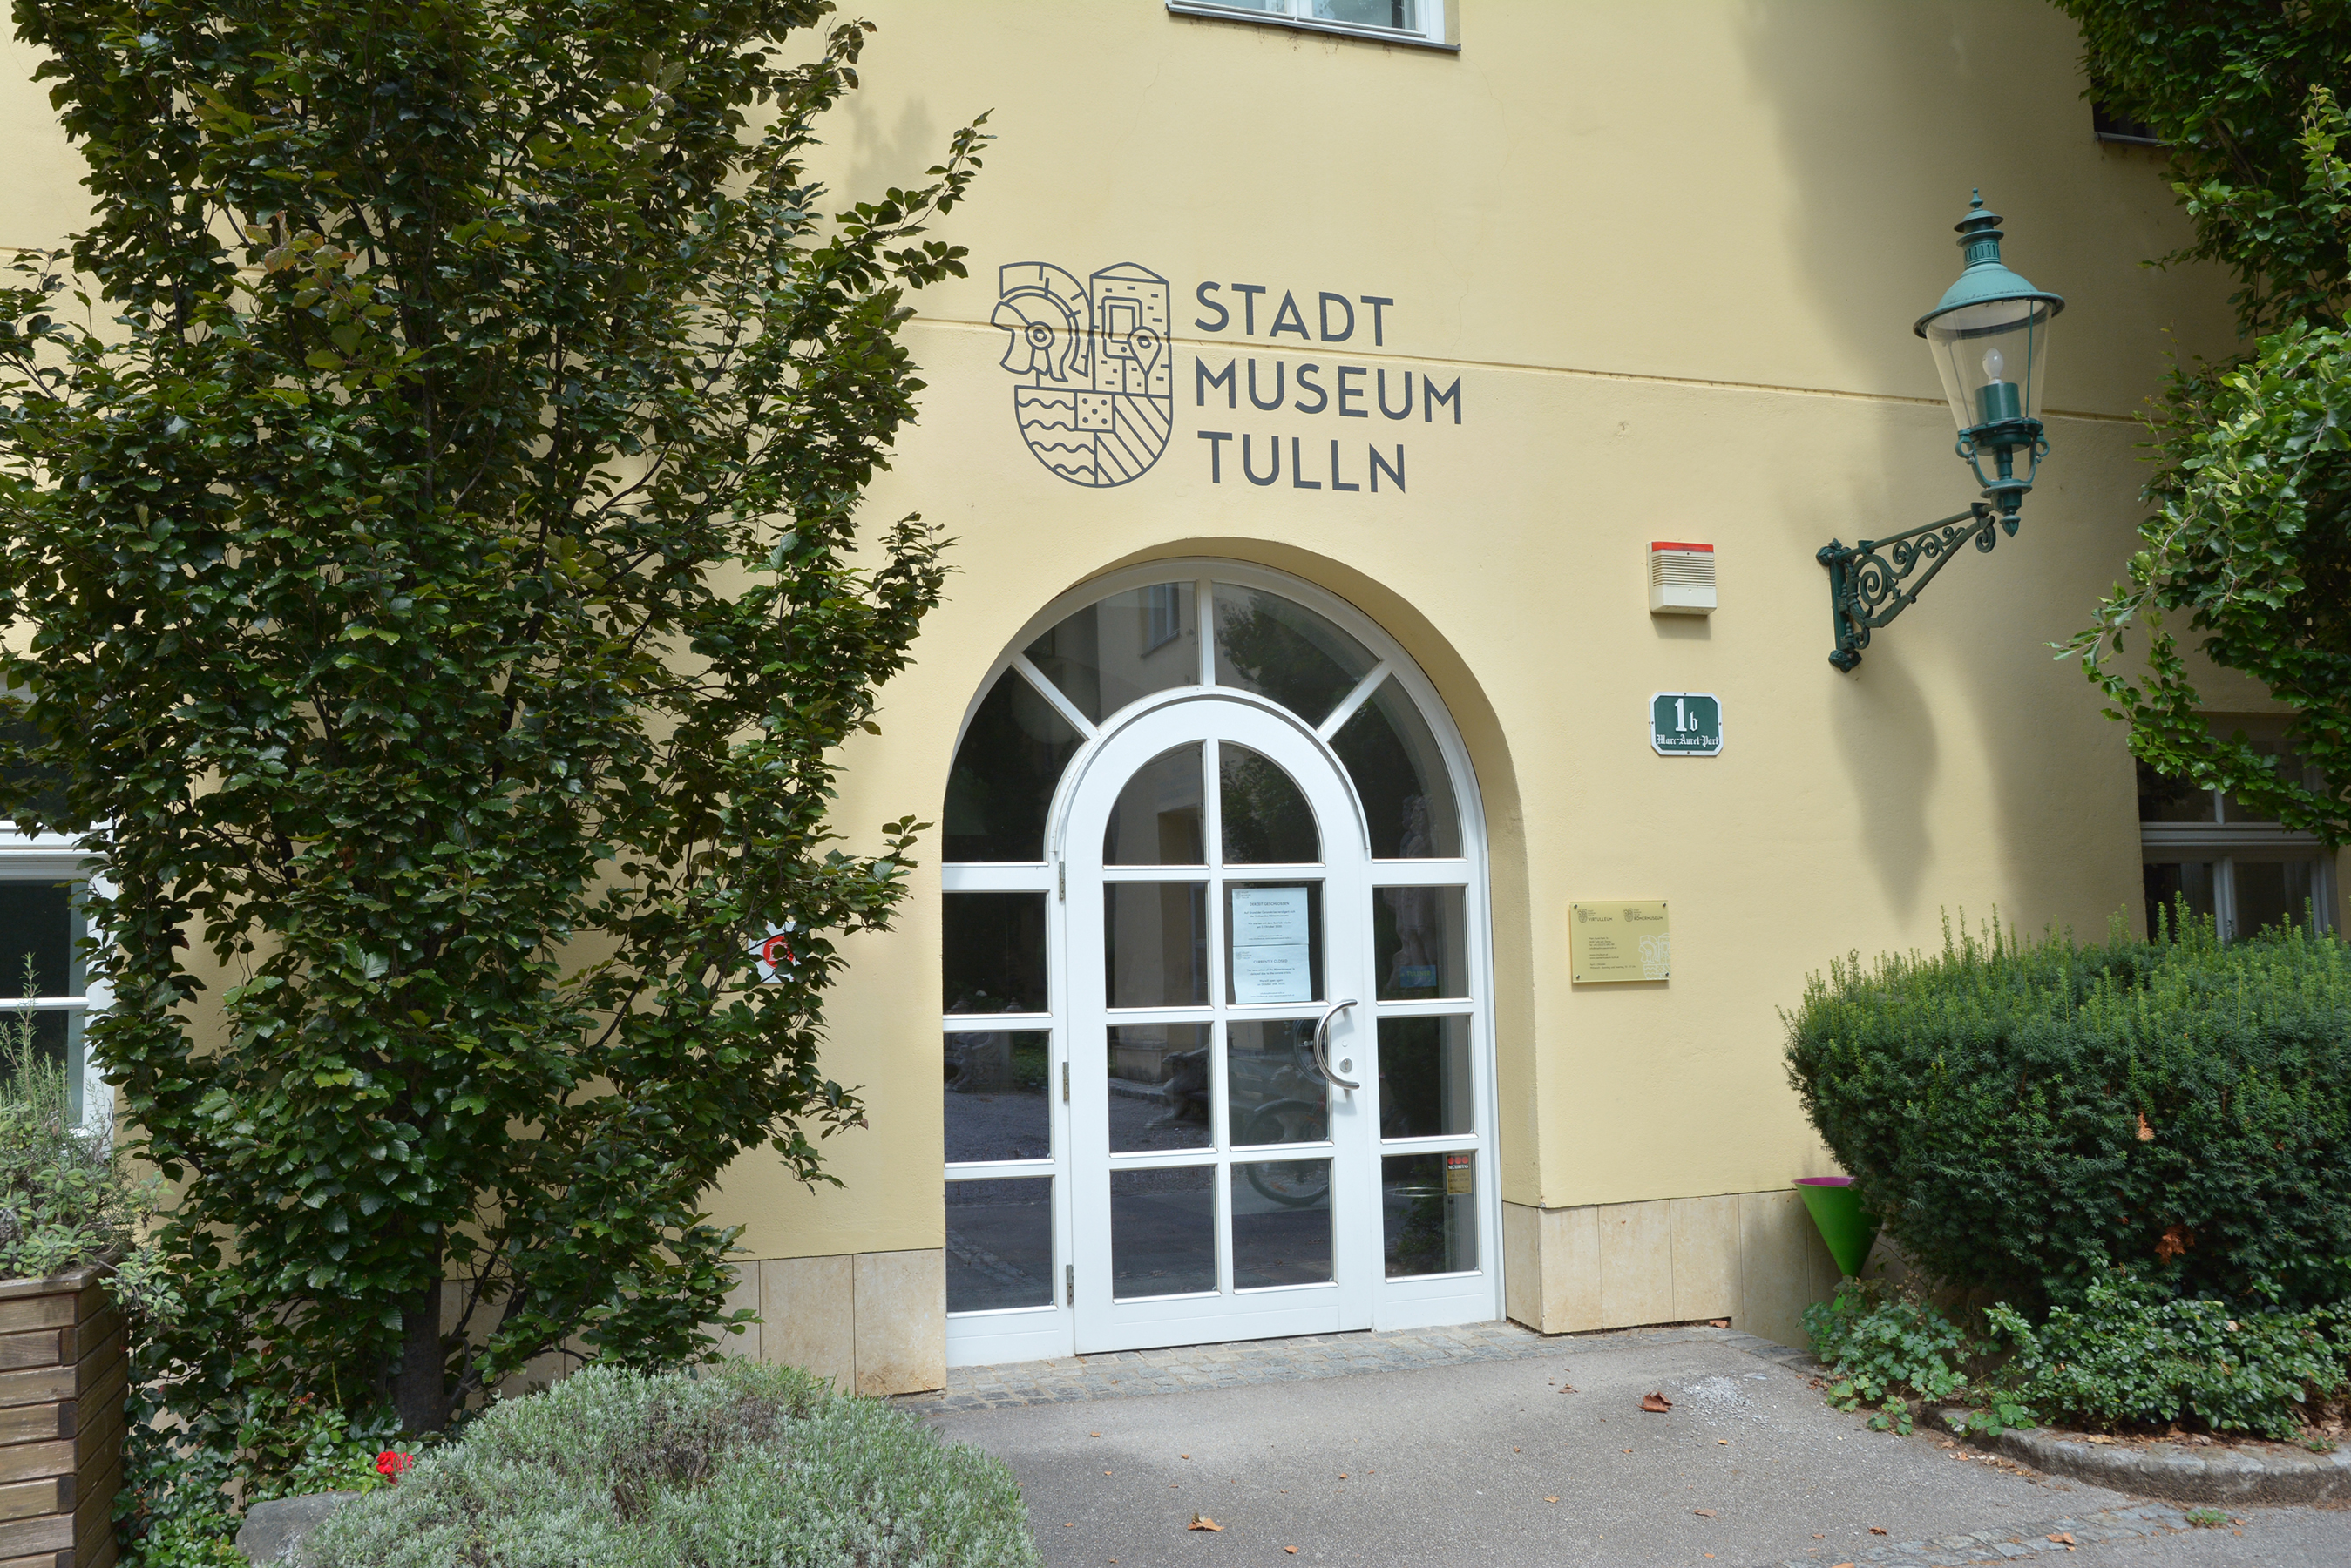 Foto des Eingangs zum Stadtmuseum Tulln. Über dem Eingang ist neben dem Schriftzug "Stadtmuseum Tulln" das wappenartige Logo des Museums zu sehen.